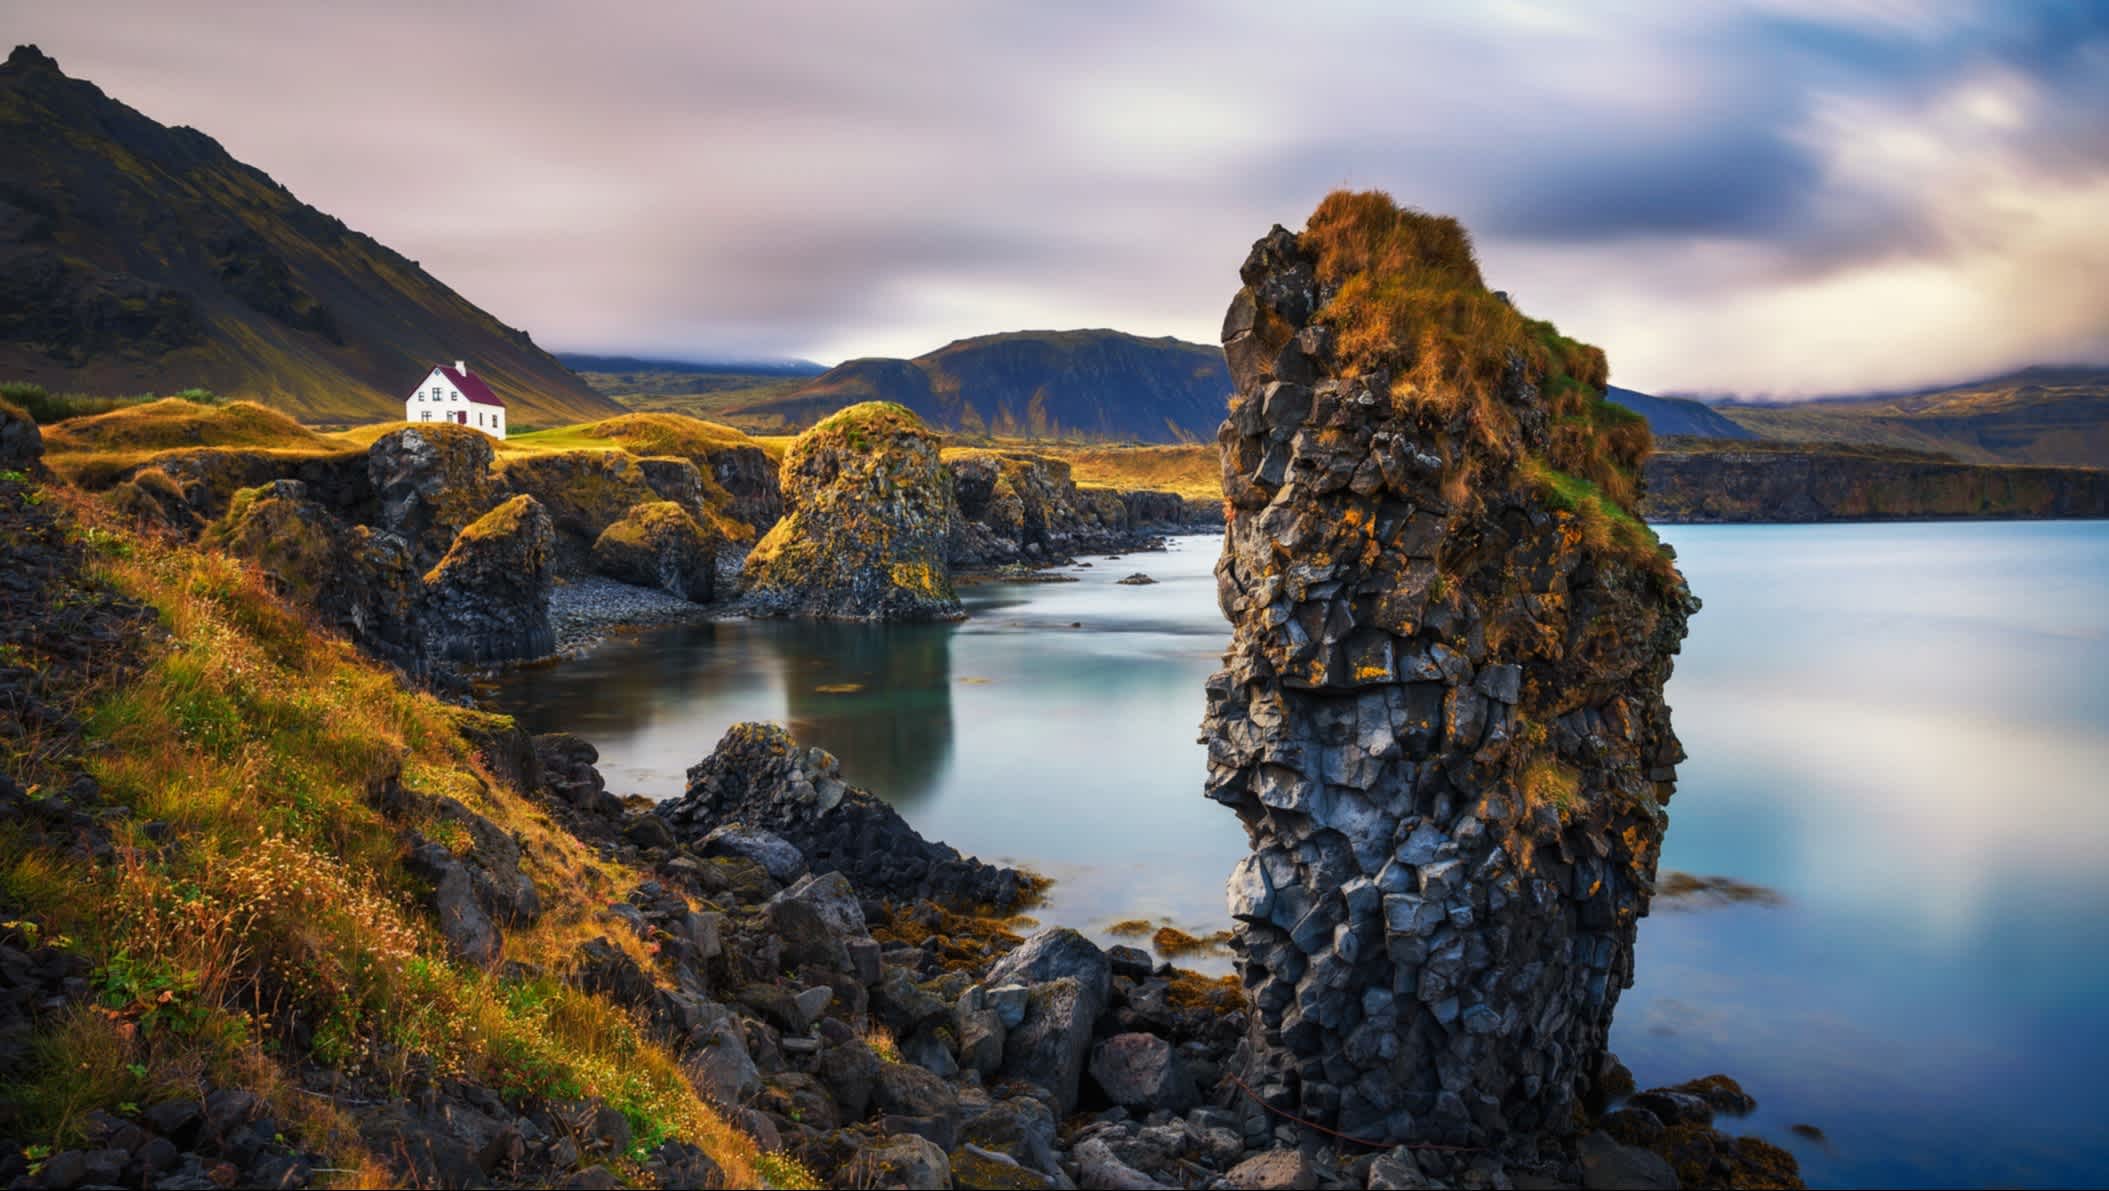 Une vue de la côte et des rochers avec une maison isolée. Des couleurs d'automne avec des montagnes enneigées en arrière-plan. Péninsule de Snaefellsnes en Islande